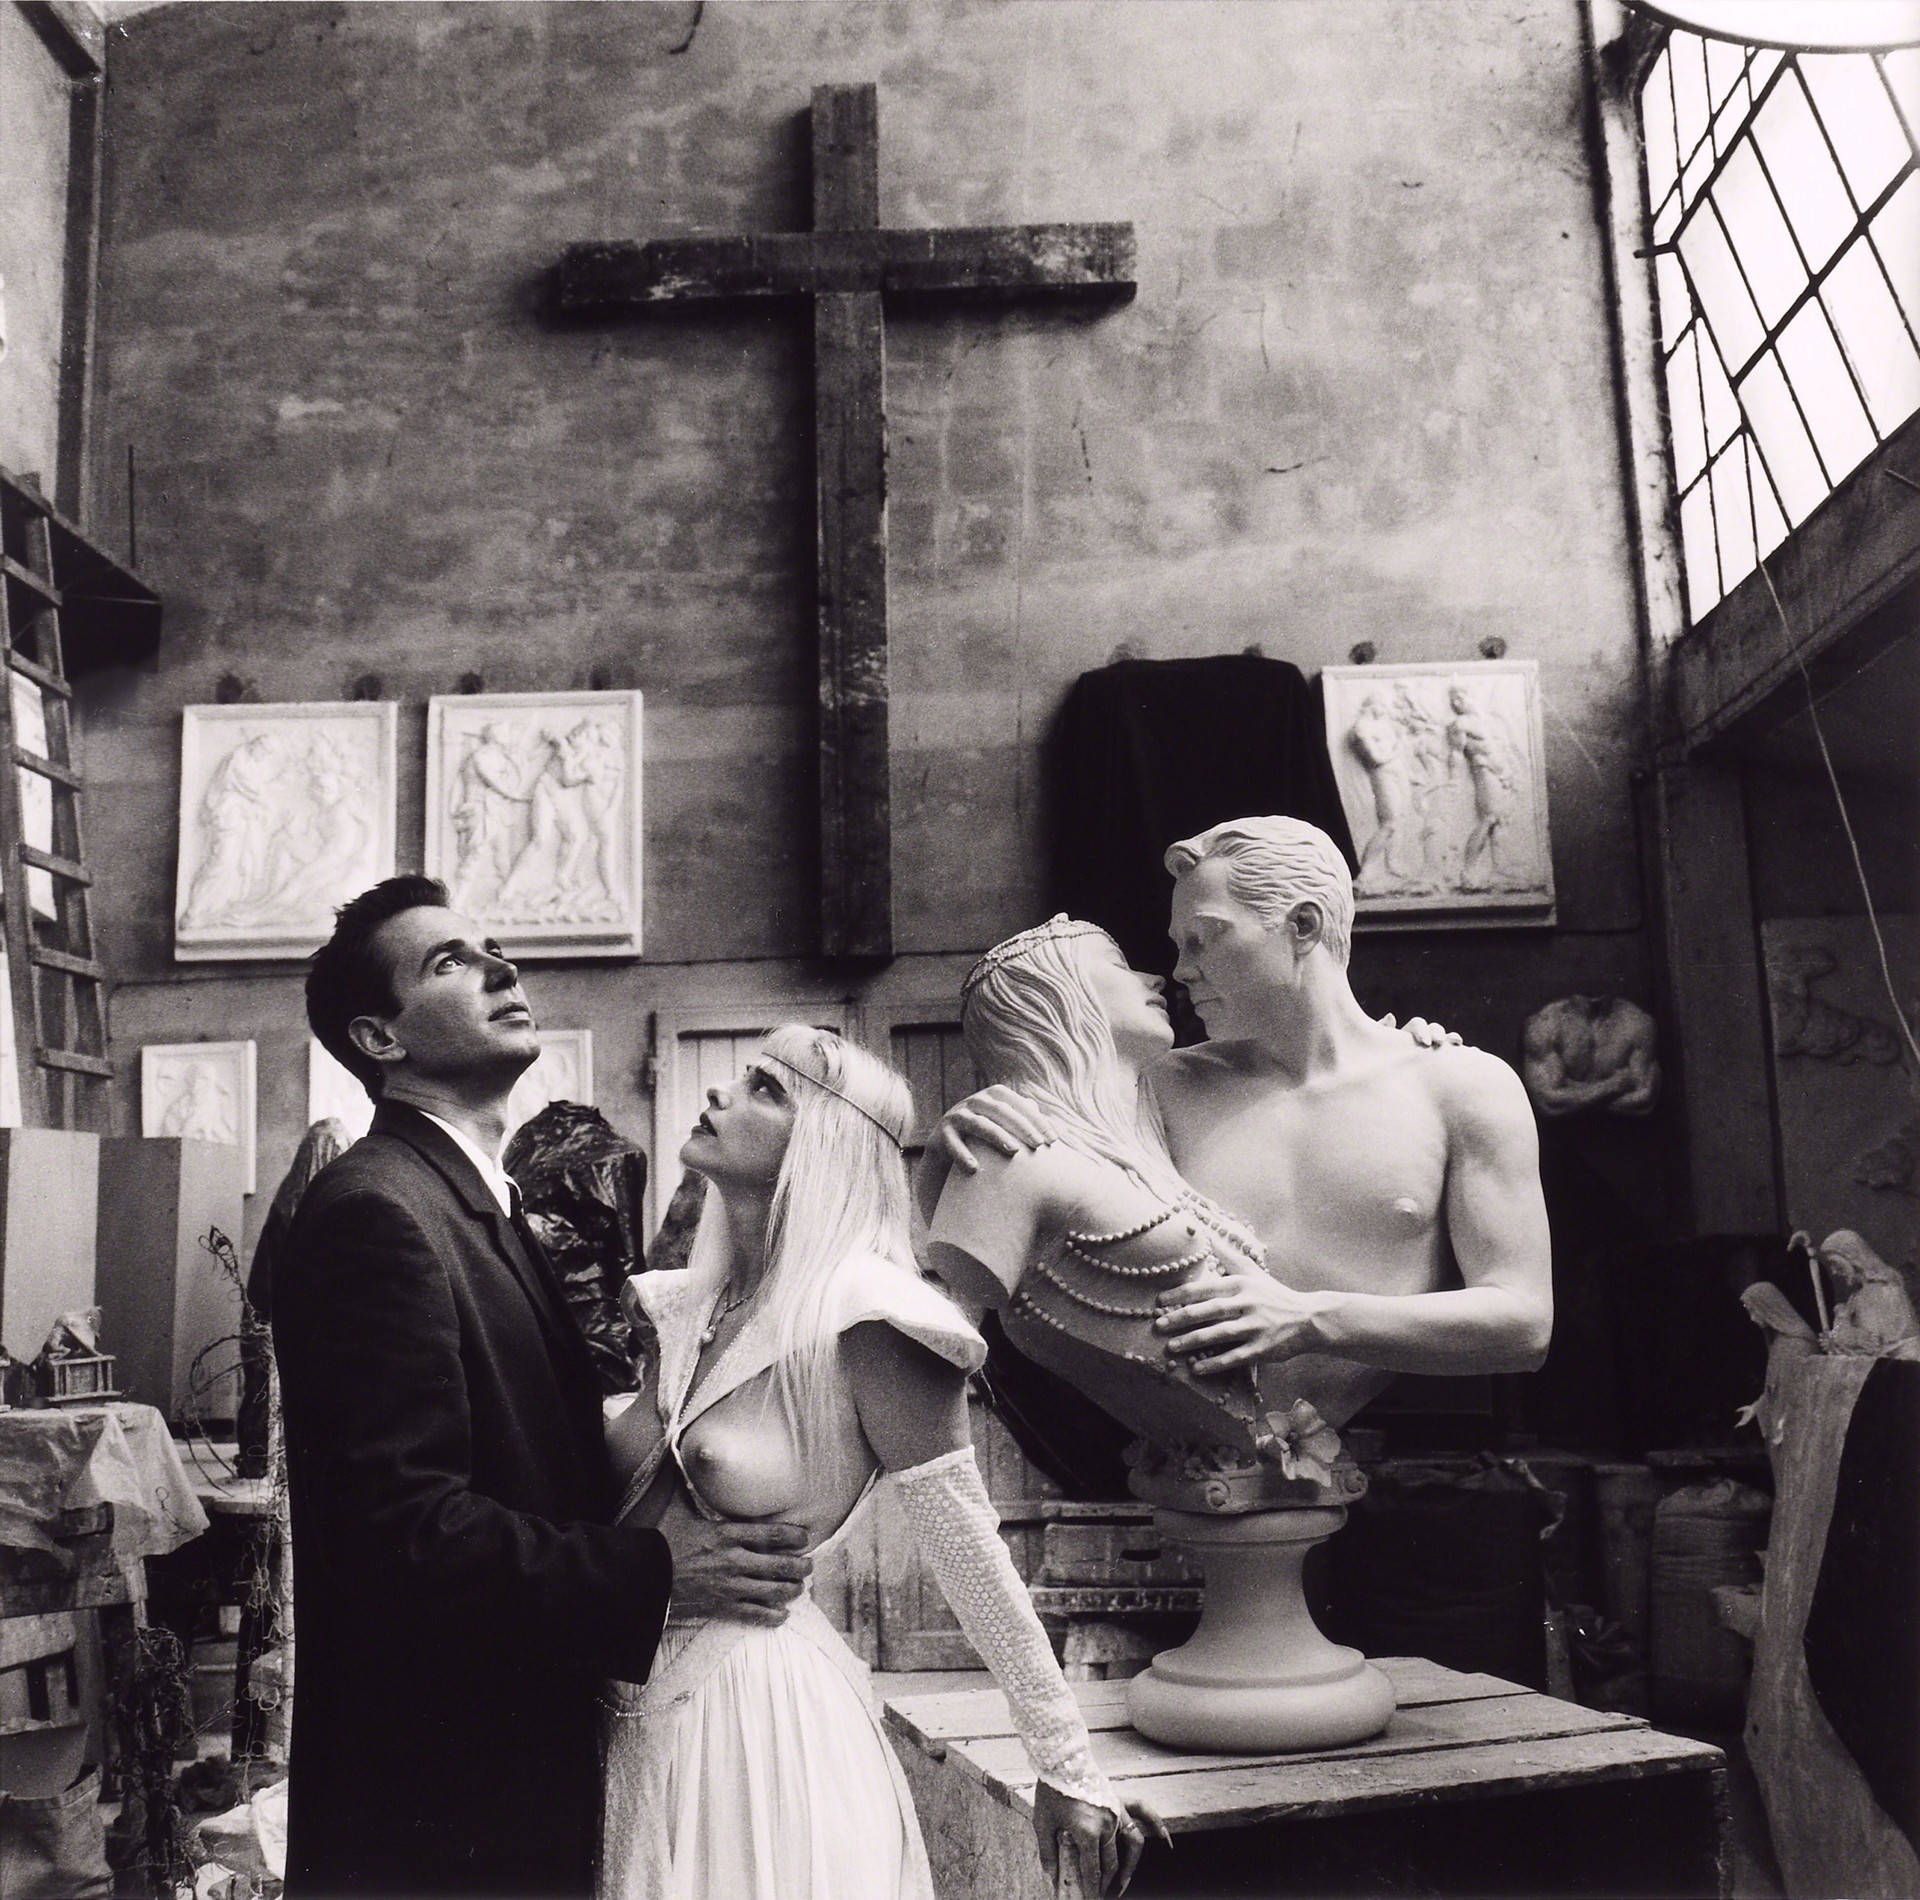 Скульптор Джефф Кунс и Чиччолина, Италия, 1991. Фотограф Хельмут Ньютон